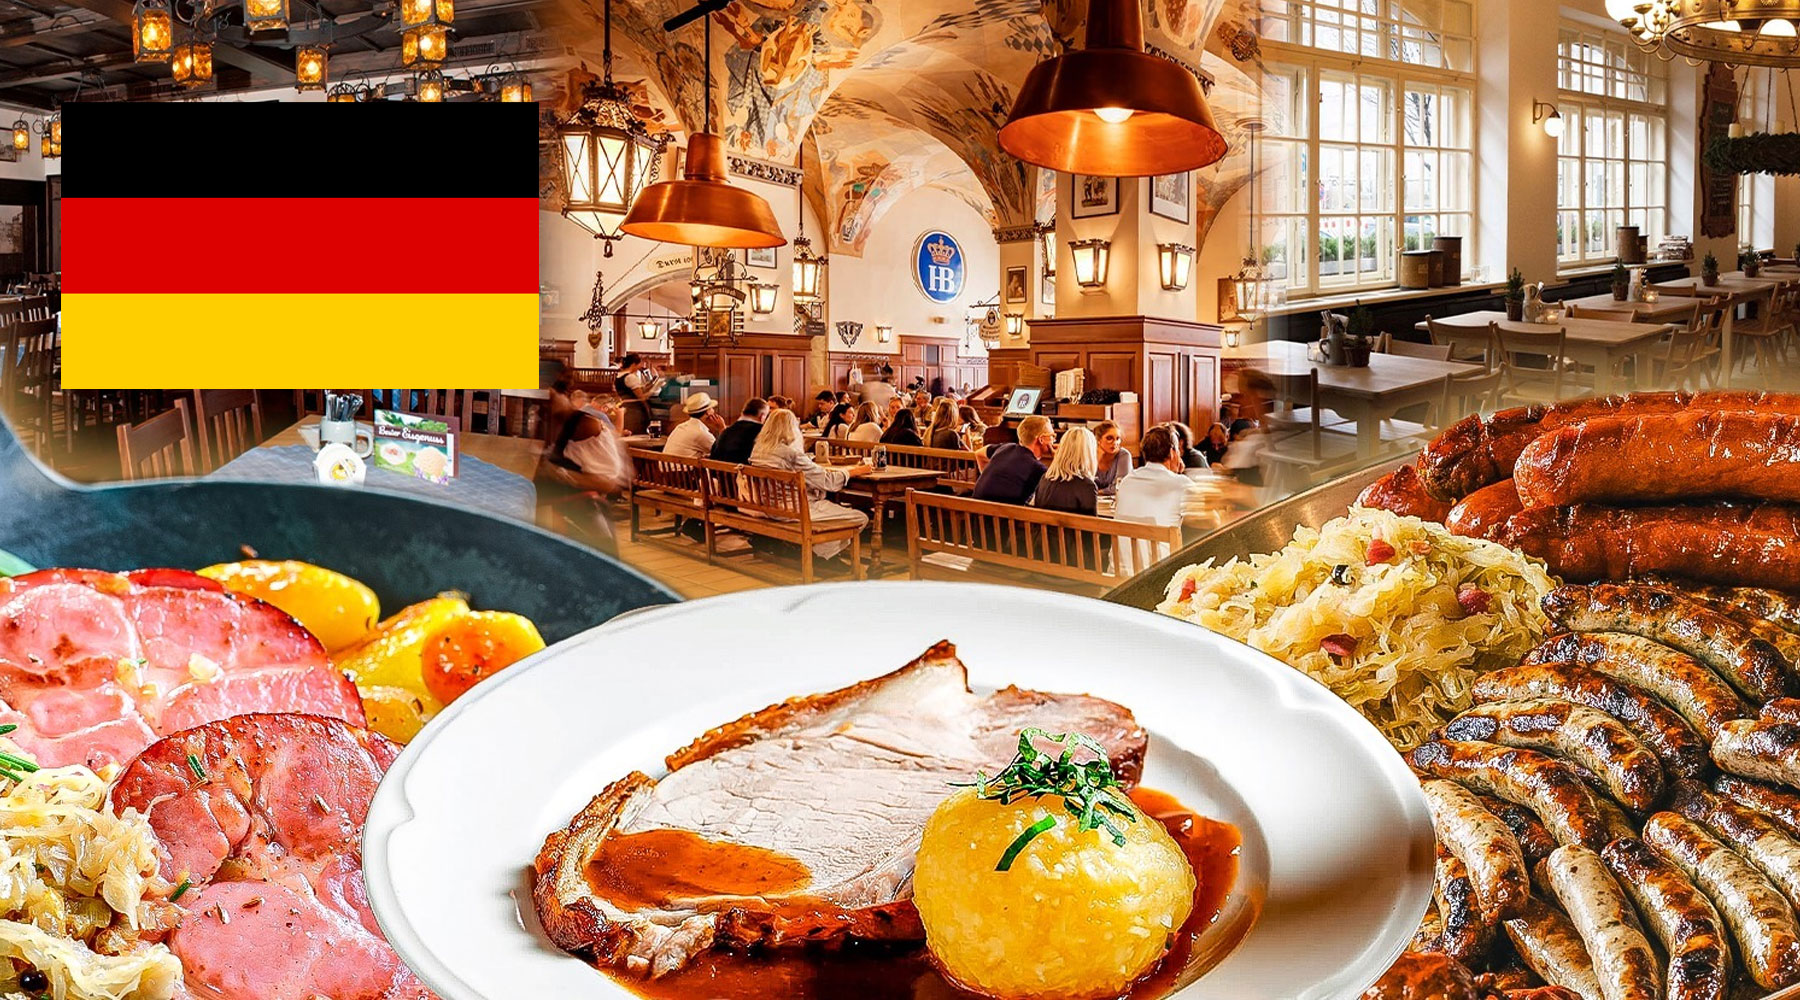 مکالمه و اصطلاحات کاربردی آلمانی در رستوران با ترجمه